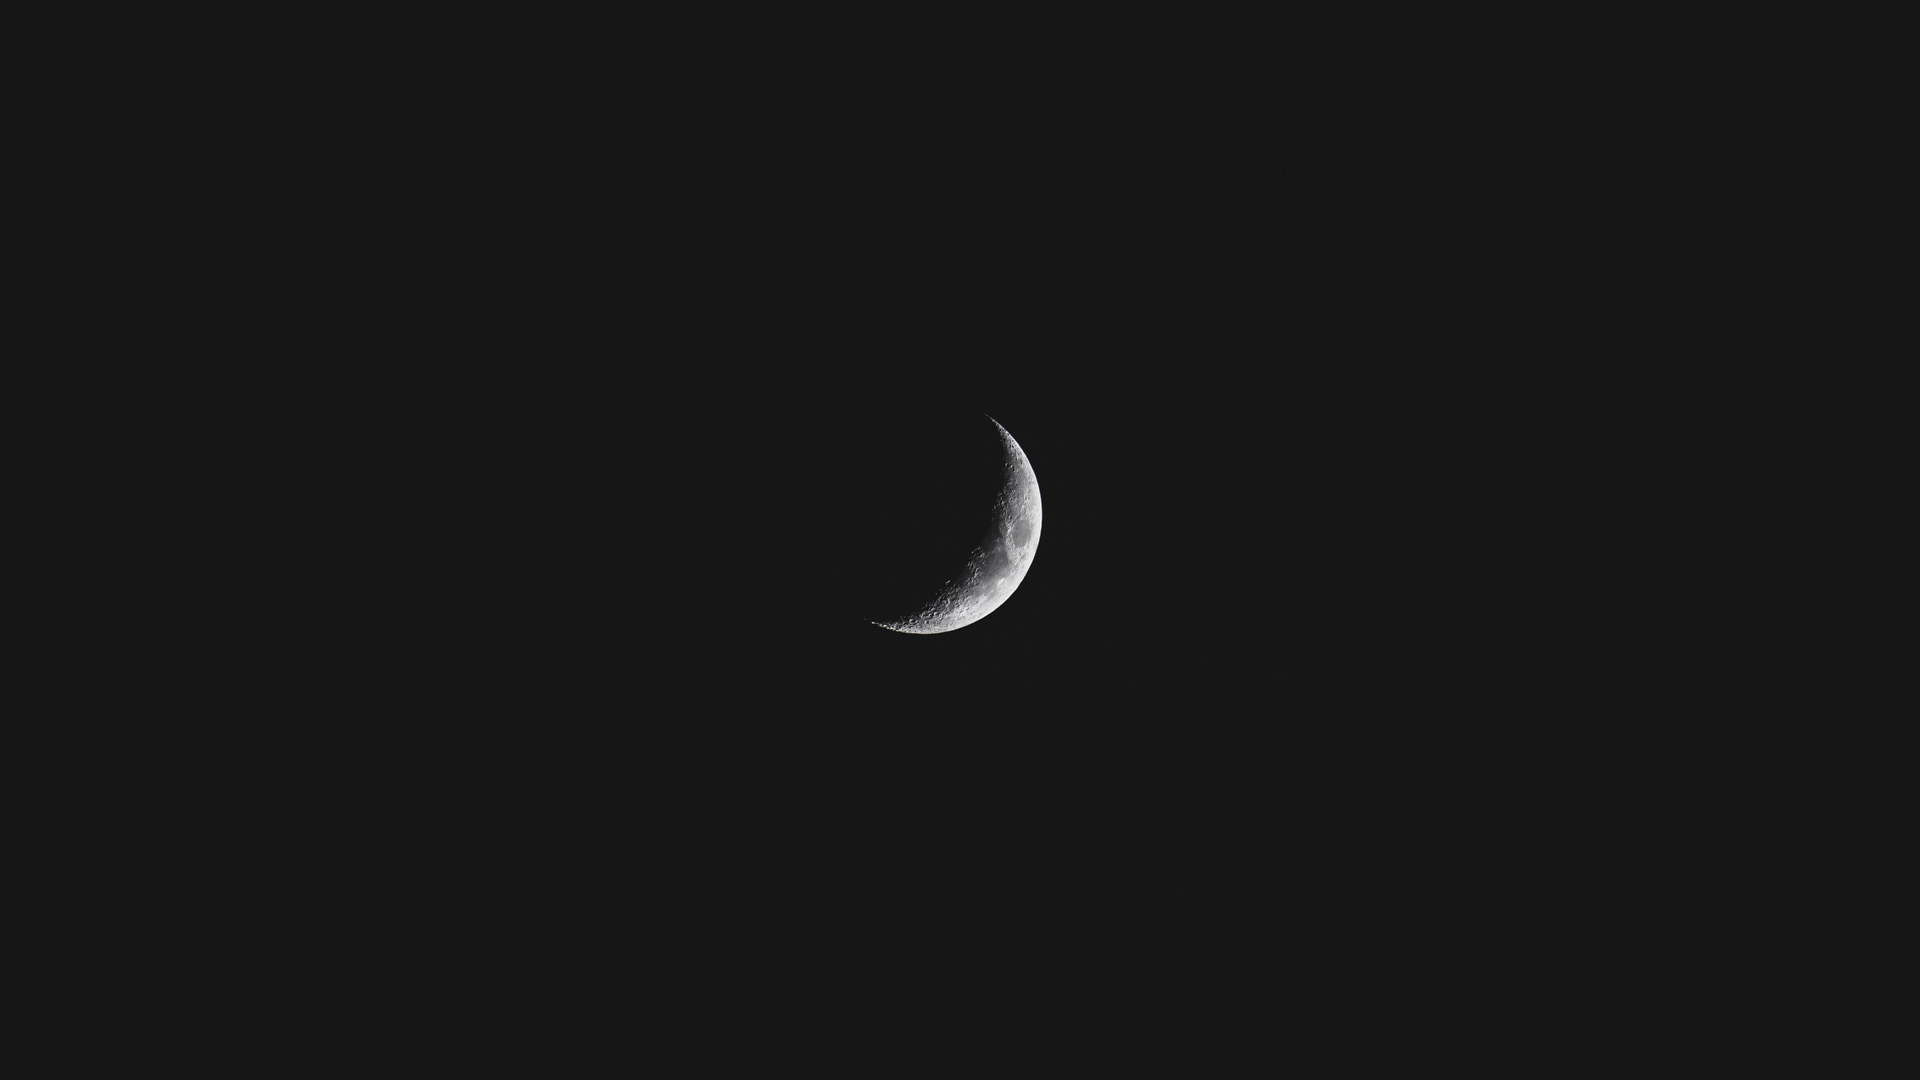 Aspecto de la luna del planeta Tierra captada en una noche oscura